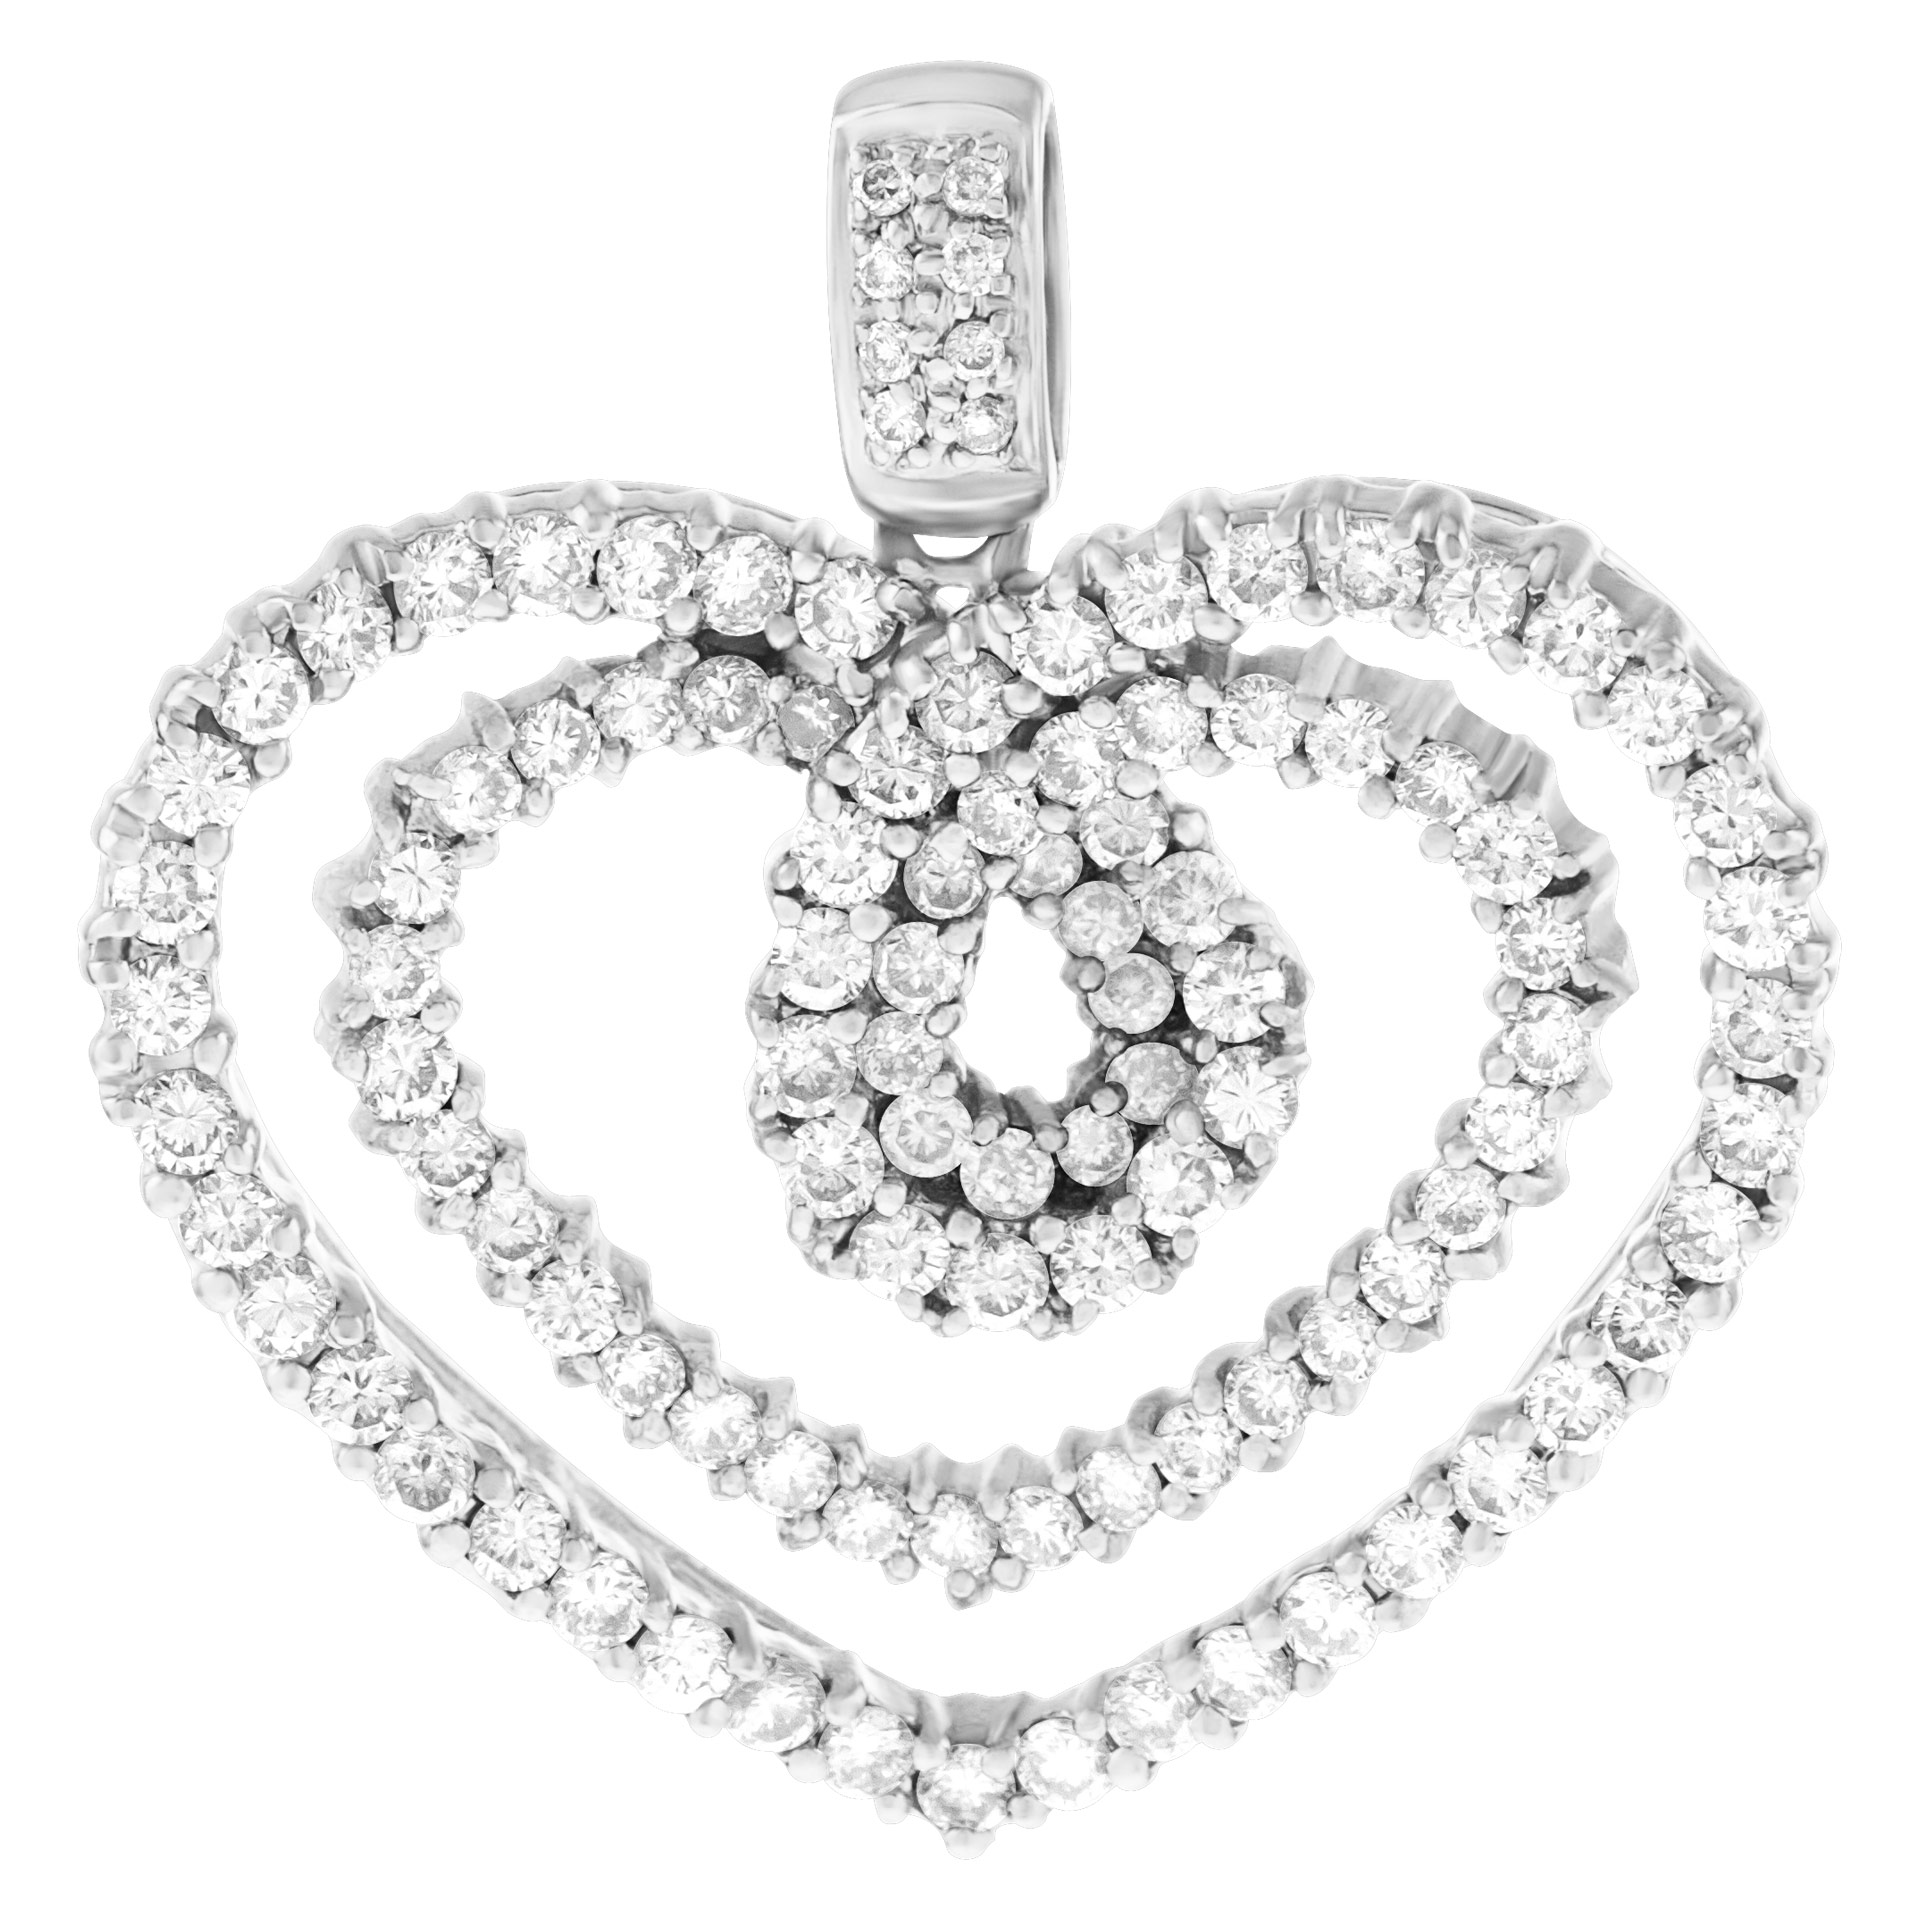 Diamond heart pendant in 18k white gold